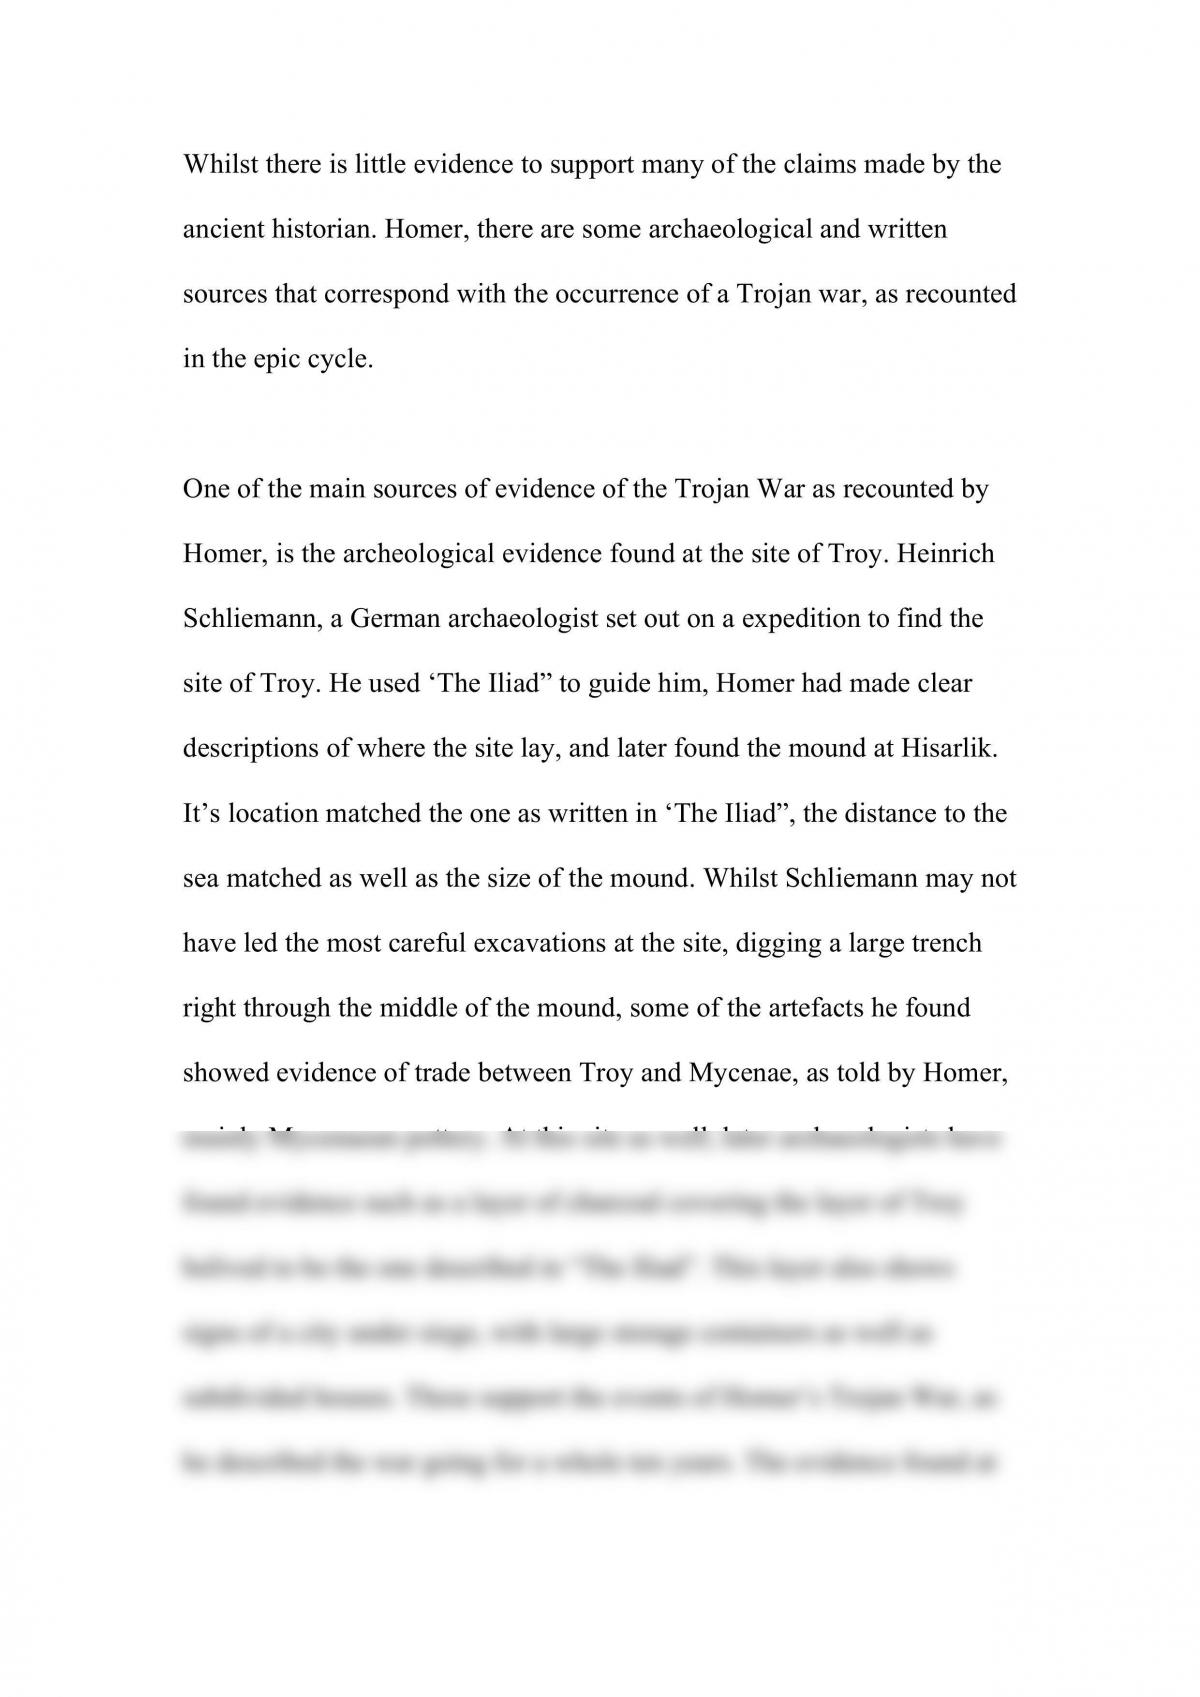 essay on the trojan war